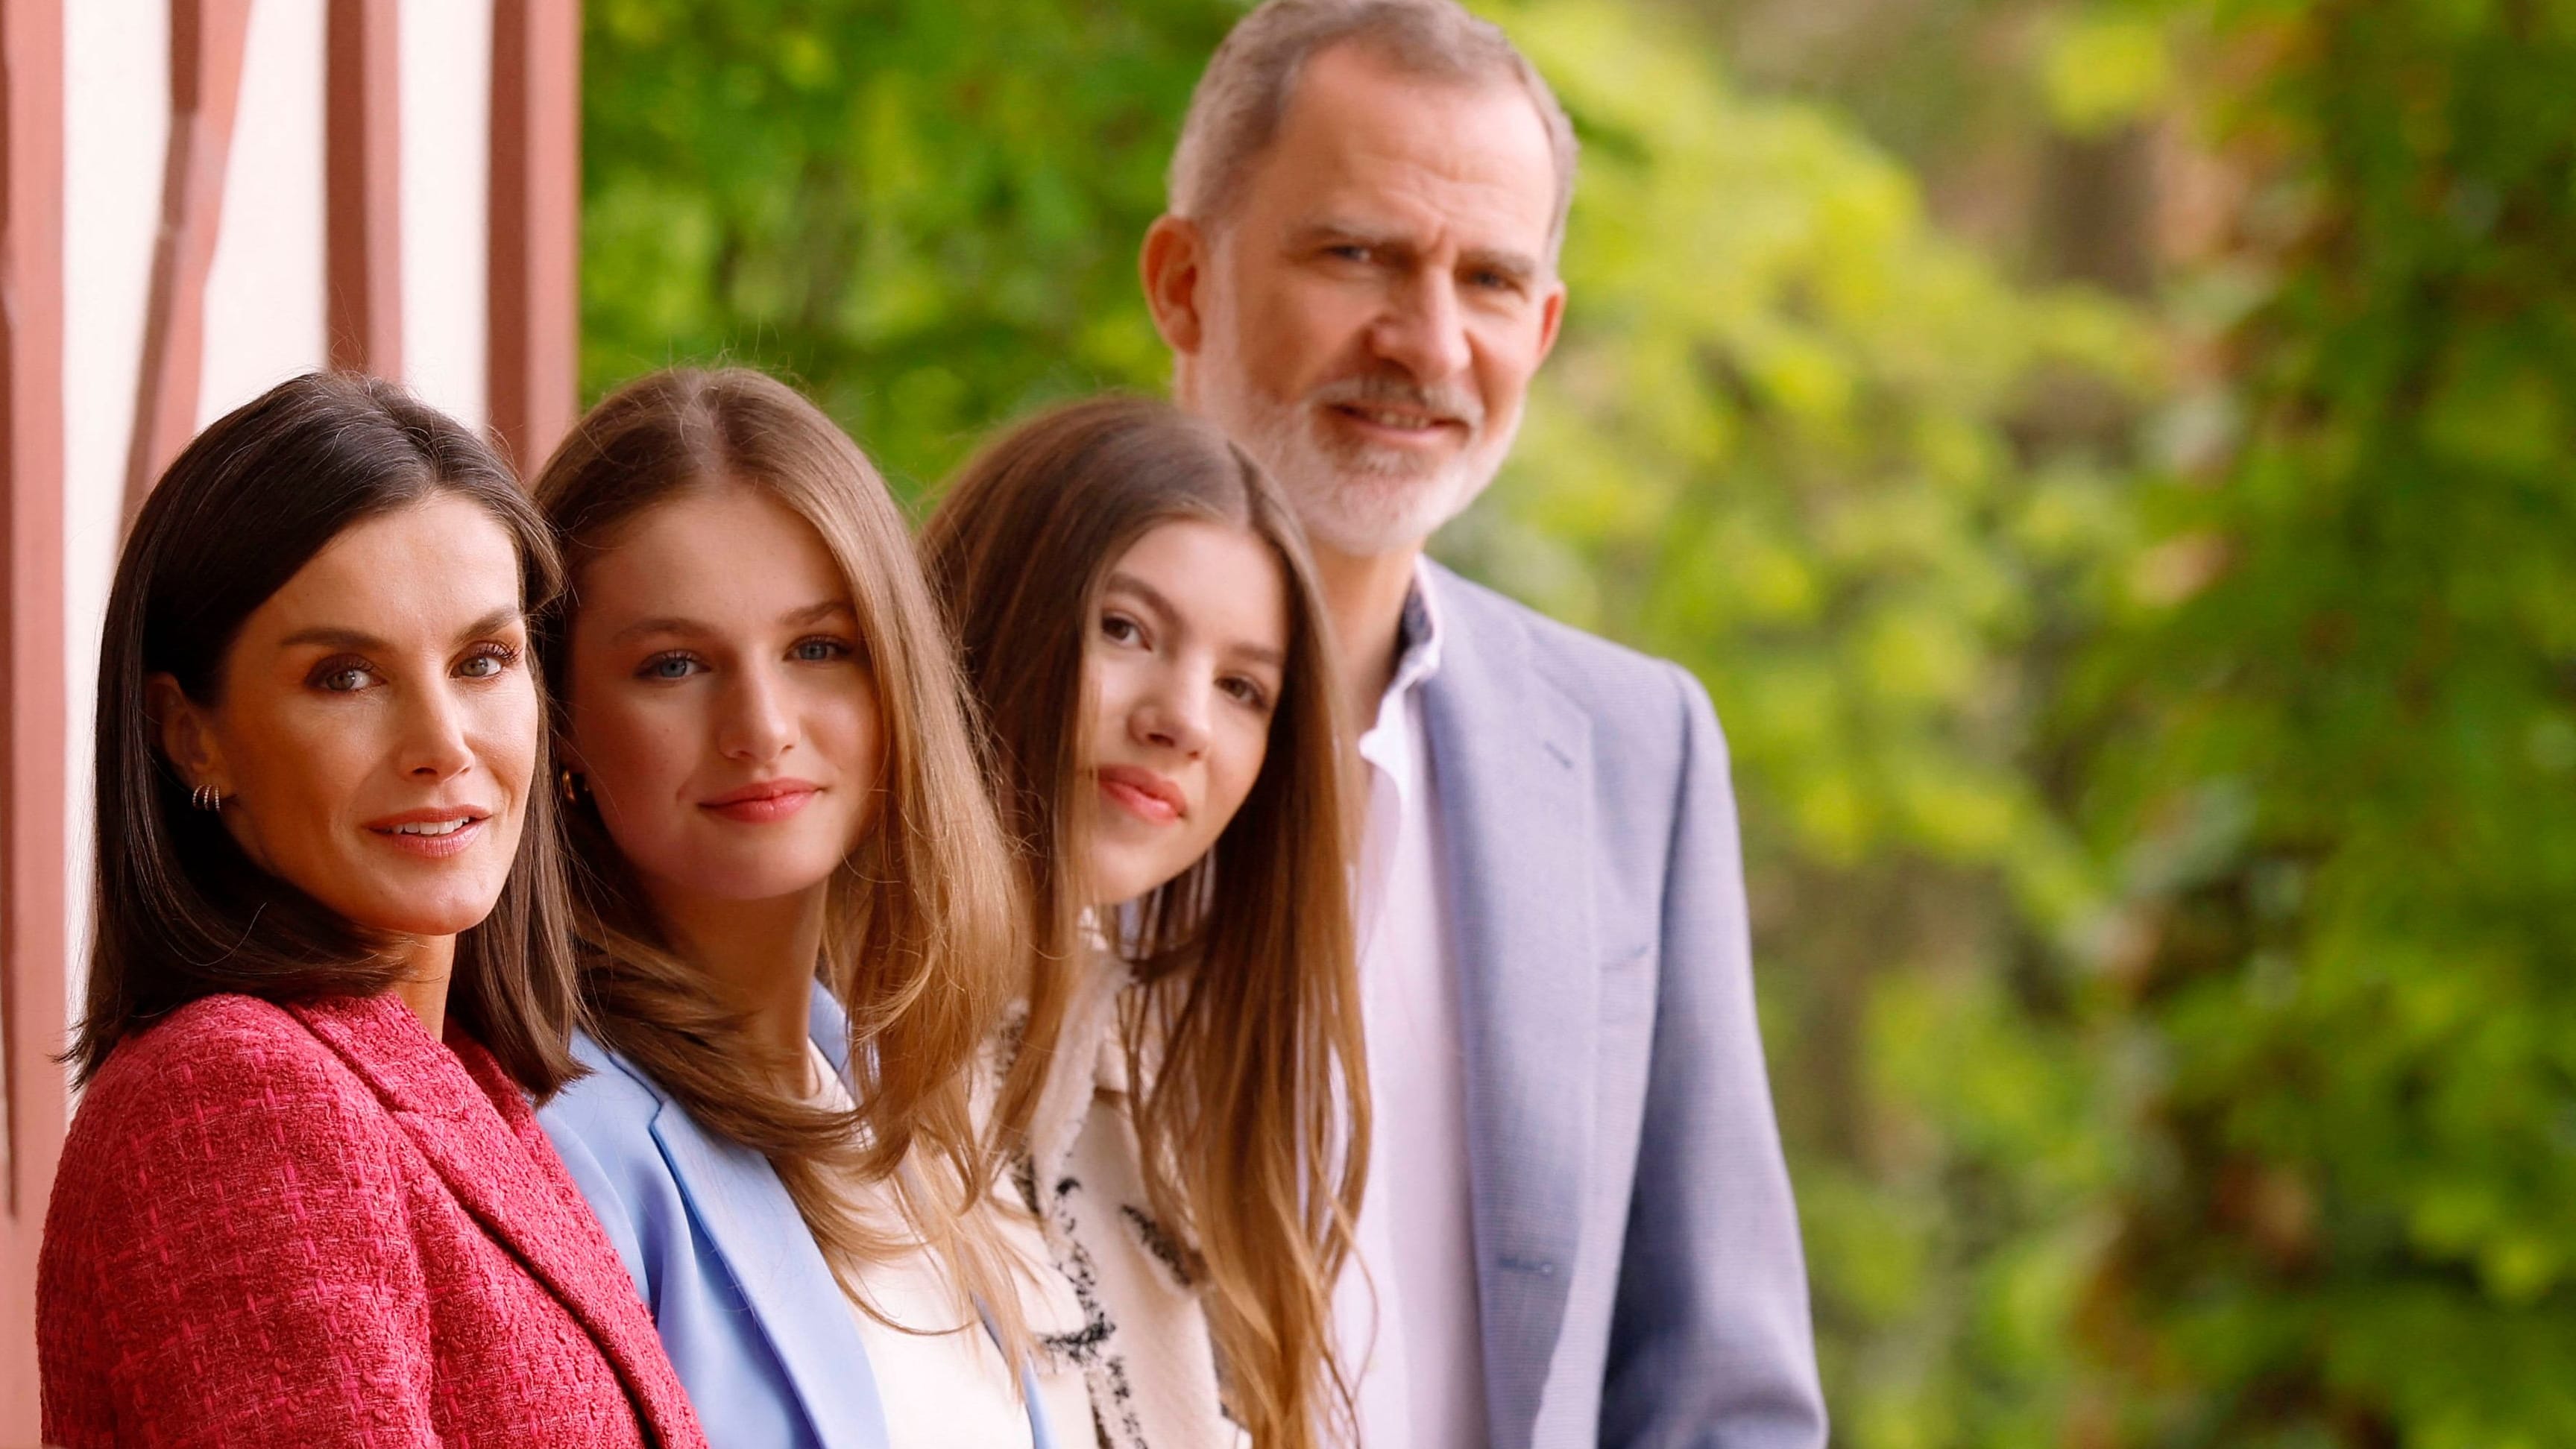 Letizia und Felipe von Spanien: Auf Familienfotos sticht die Tochter heraus